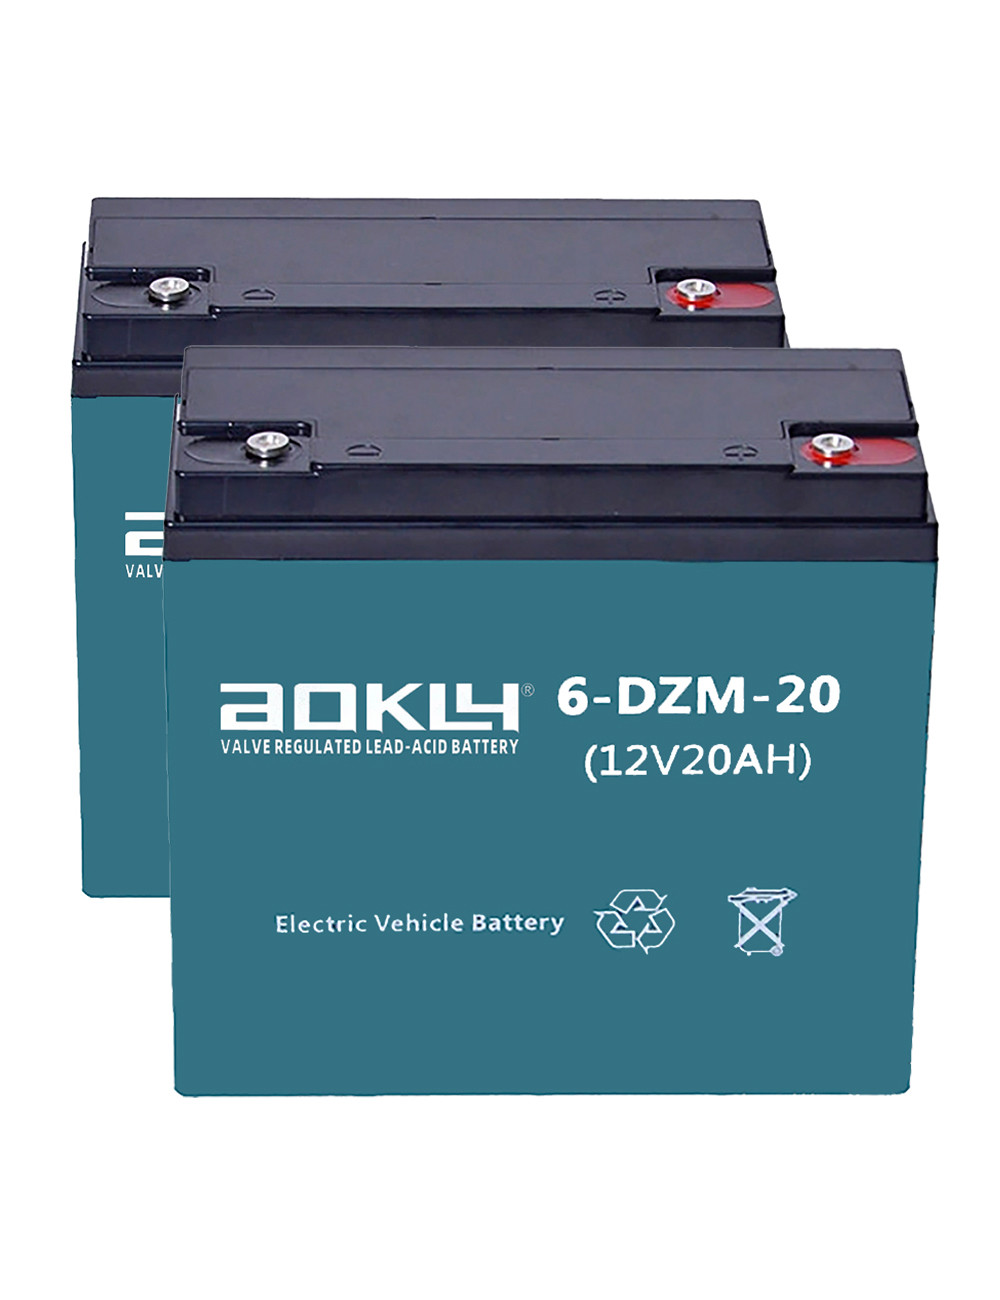 Pack 2 baterías para silla de ruedas y scooter eléctrico de 12V 20Ah C20 ciclo profundo Aokly 6-DZM-20 (6-DZF-20) - 2x6-DZM-20 -